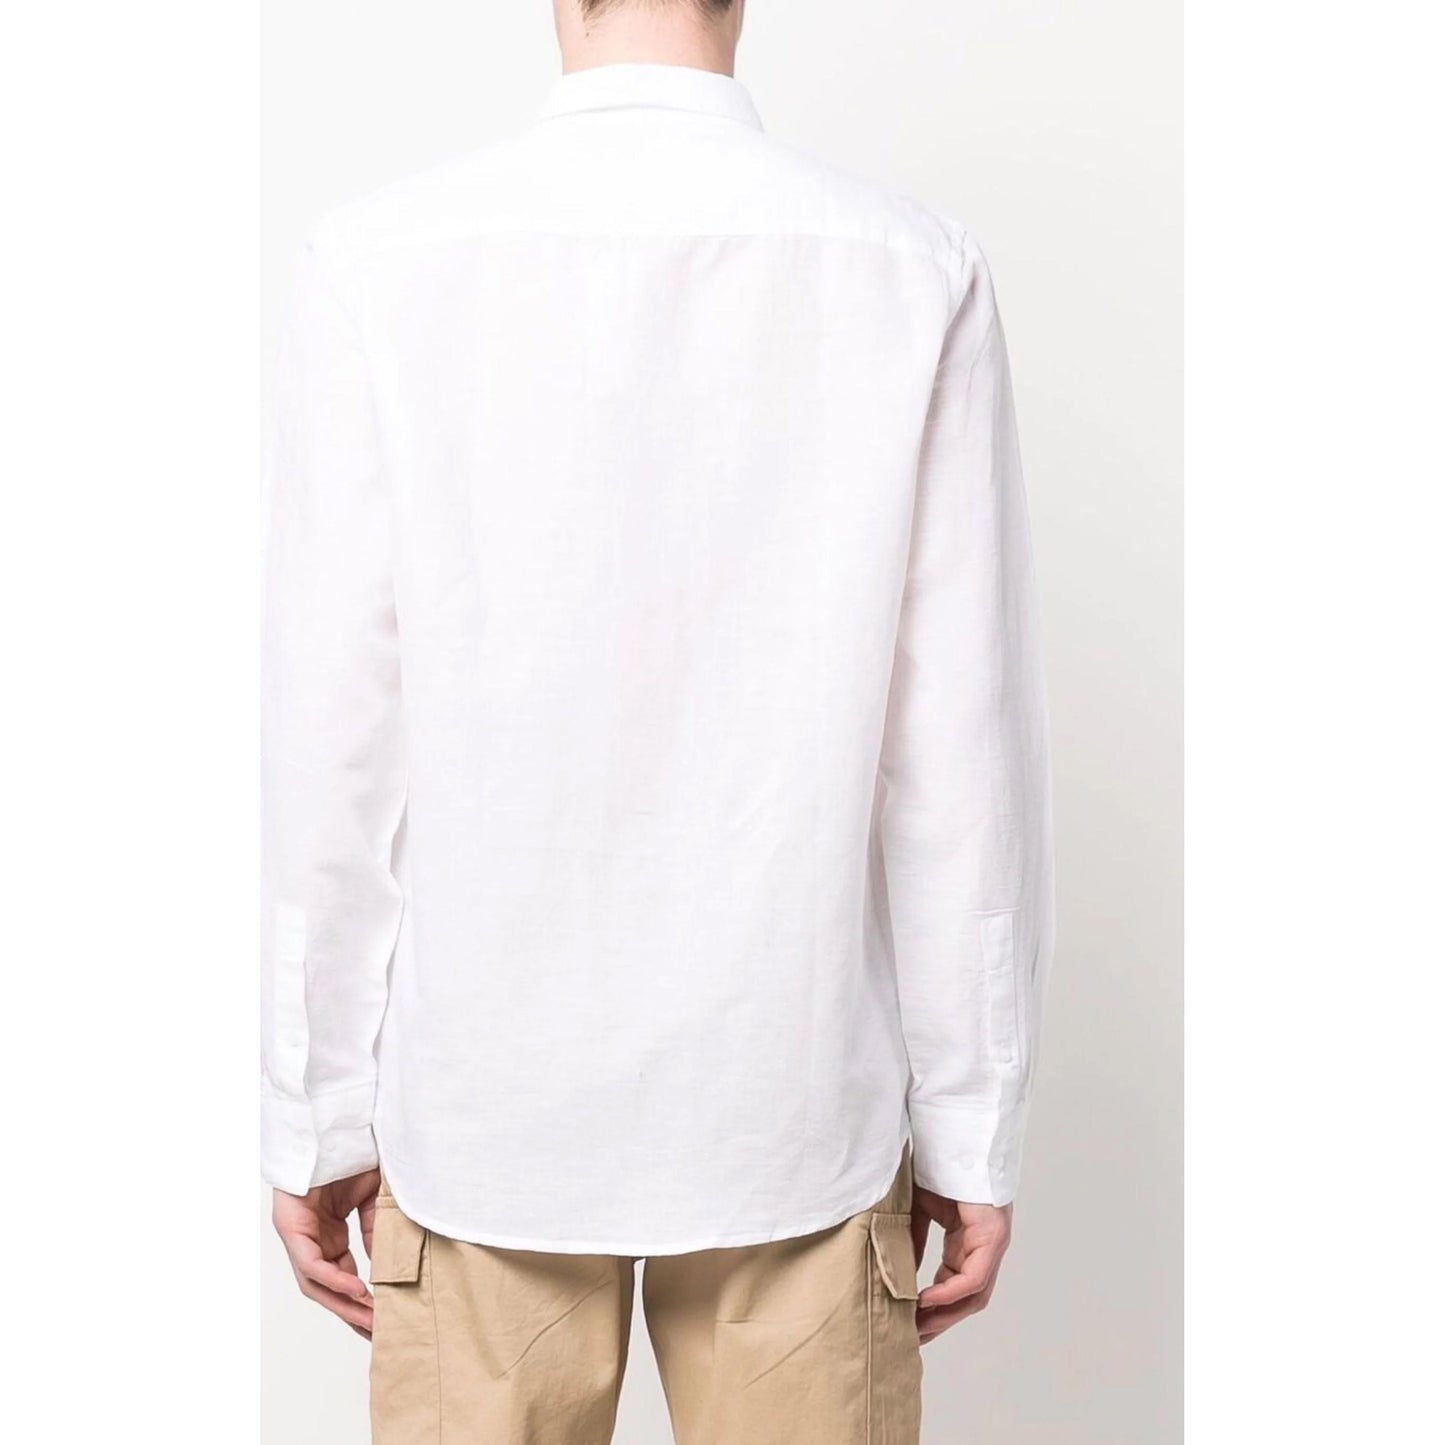 CALVIN KLEIN marškiniai ilgomis rankovėmis vyrams, Balta, L/s shirt